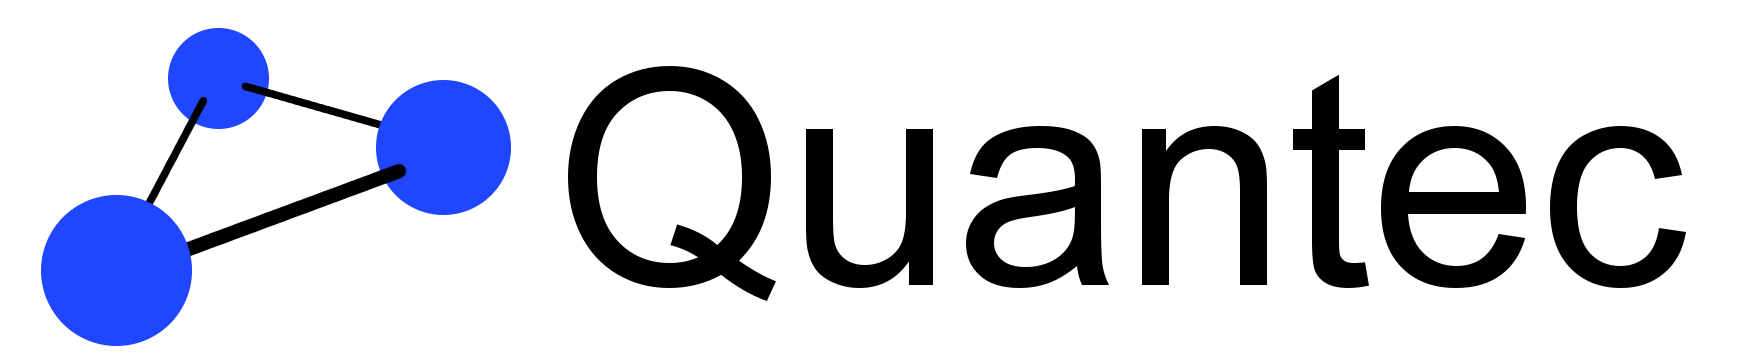 Quantec logo white